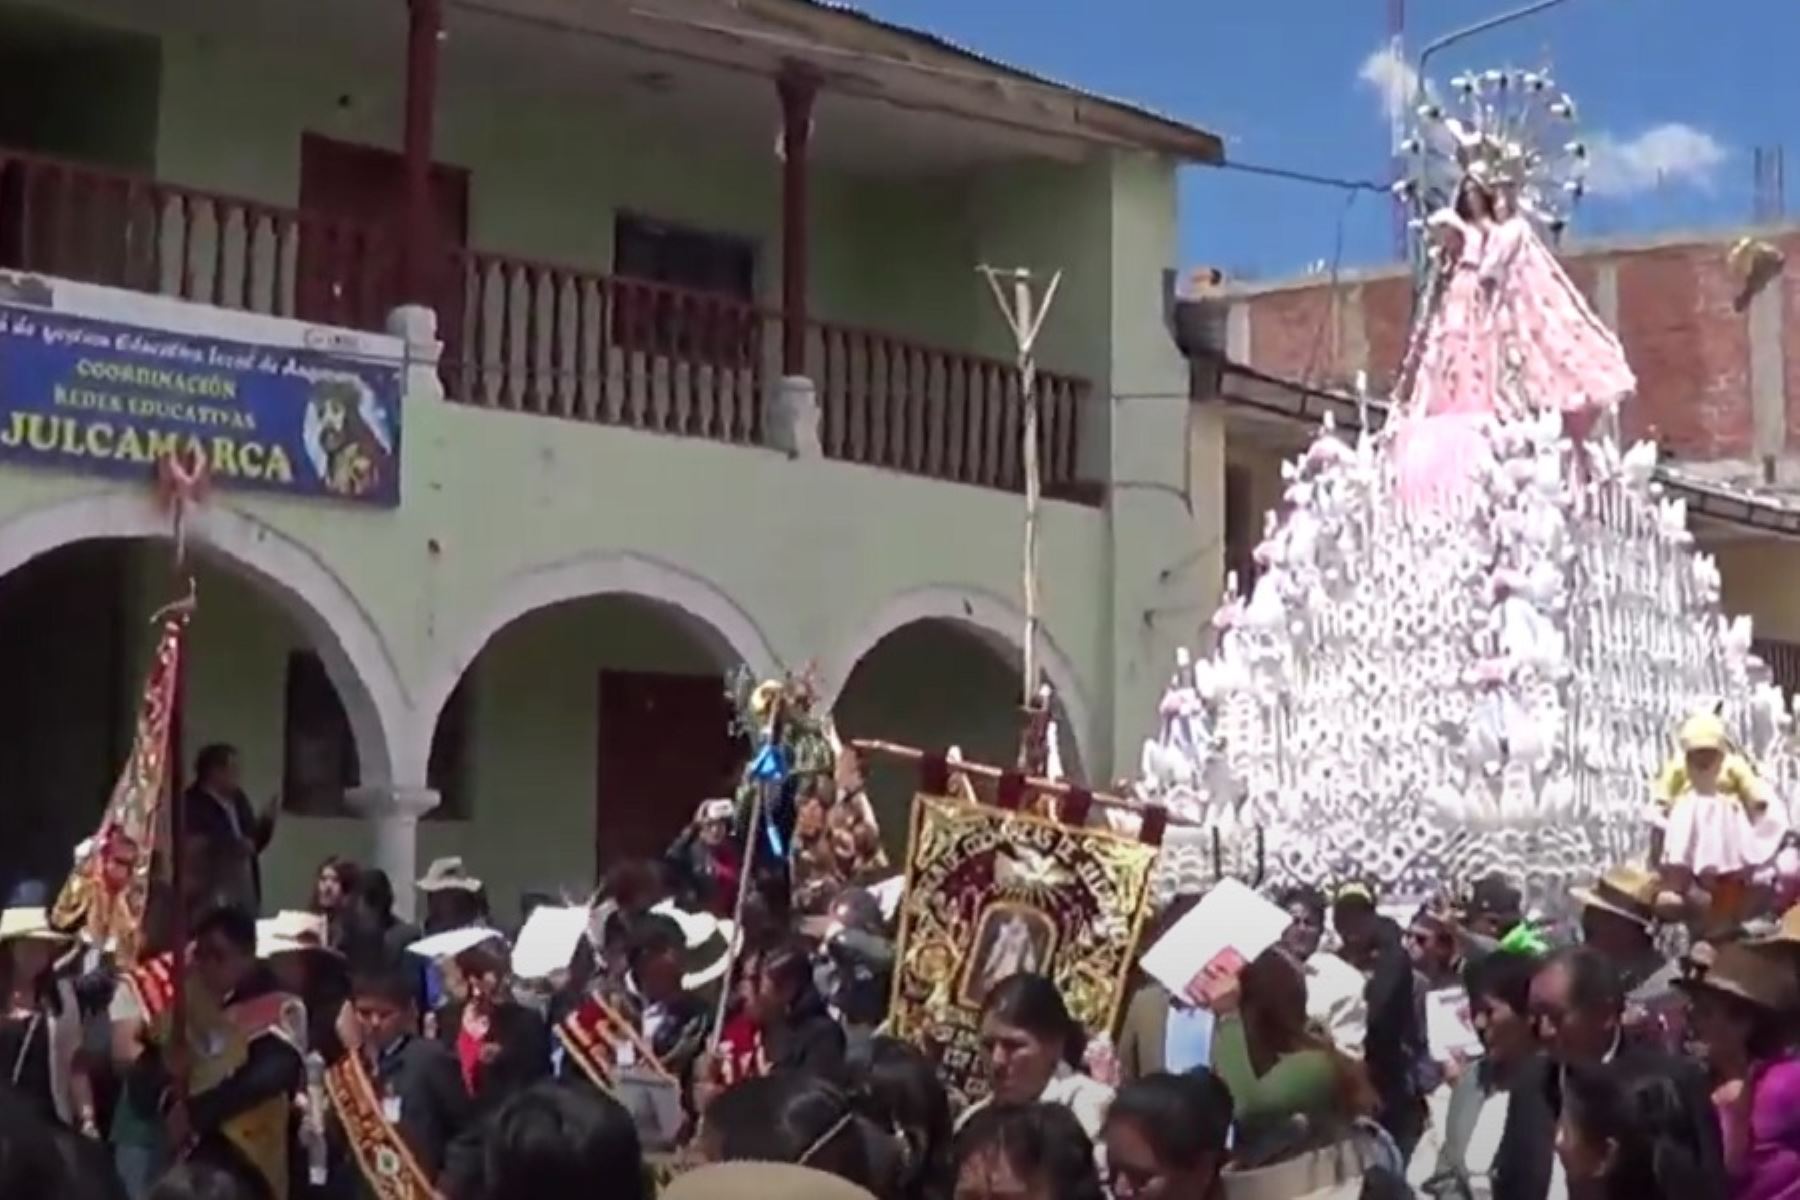 El Ministerio de Cultura declaró Patrimonio Cultural de la Nación a la Festividad patronal en honor a la Virgen de Cocharcas de Julcamarca, que se celebra cada 8 de setiembre en el distrito de Julcamarca, provincia de Angaraes, departamento de Huancavelica.